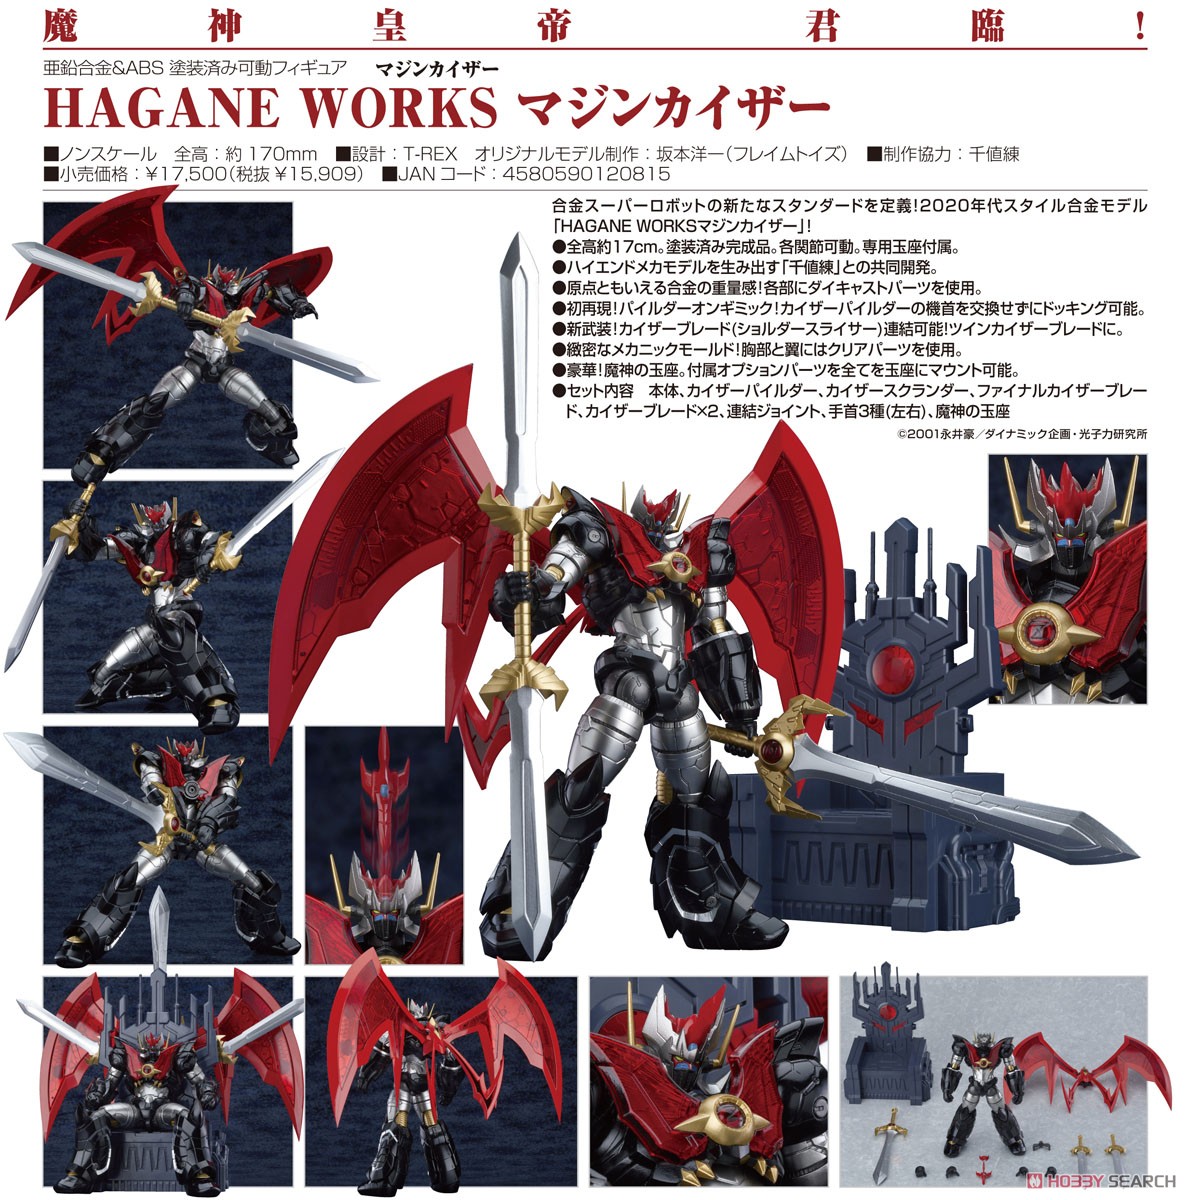 HAGANE WORKS『マジンカイザー』可動フィギュア-011